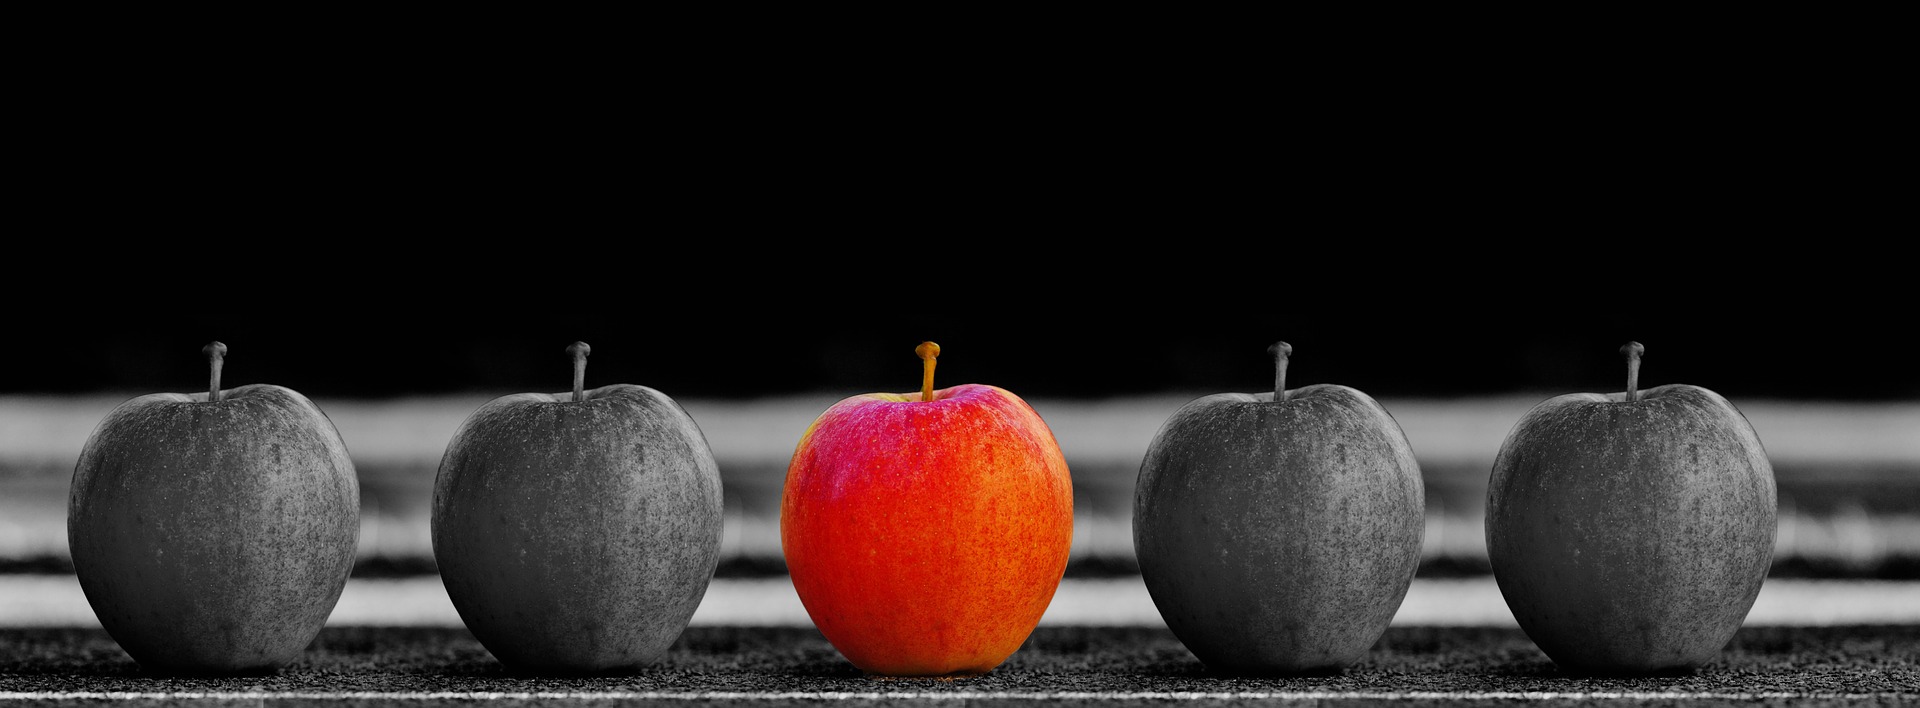 横に並べられたリンゴの白黒写真に一つだけ色が着いている